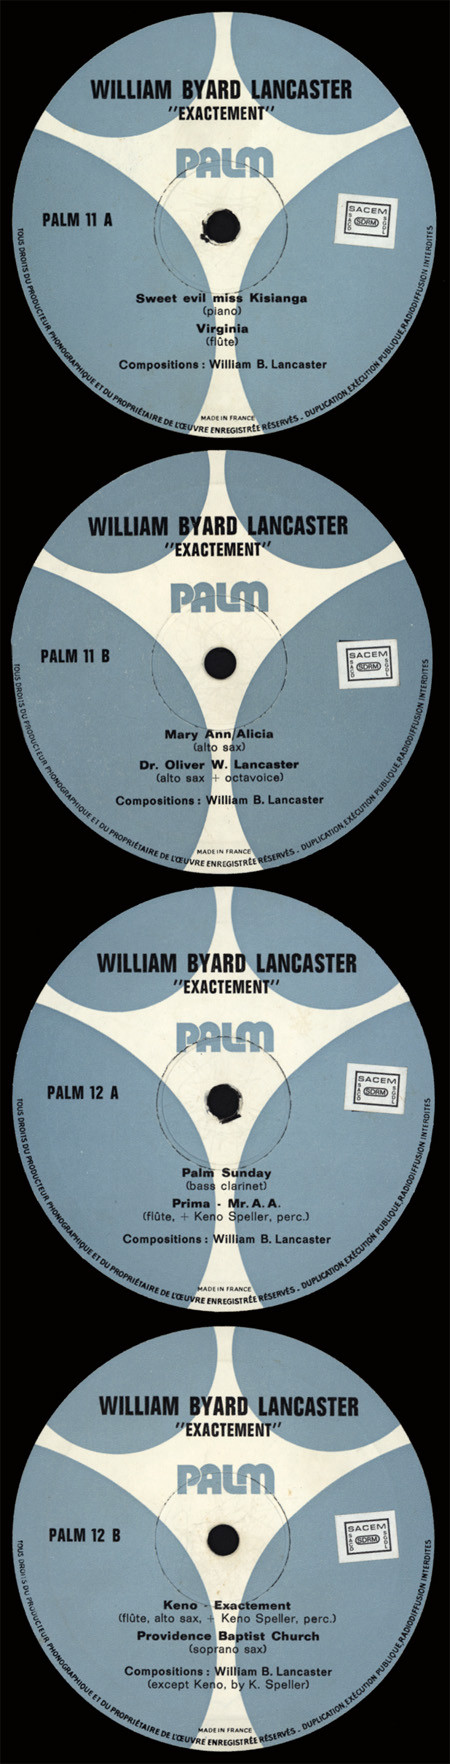 last ned album Byard Lancaster Keno Speller - Exactement Volume 1